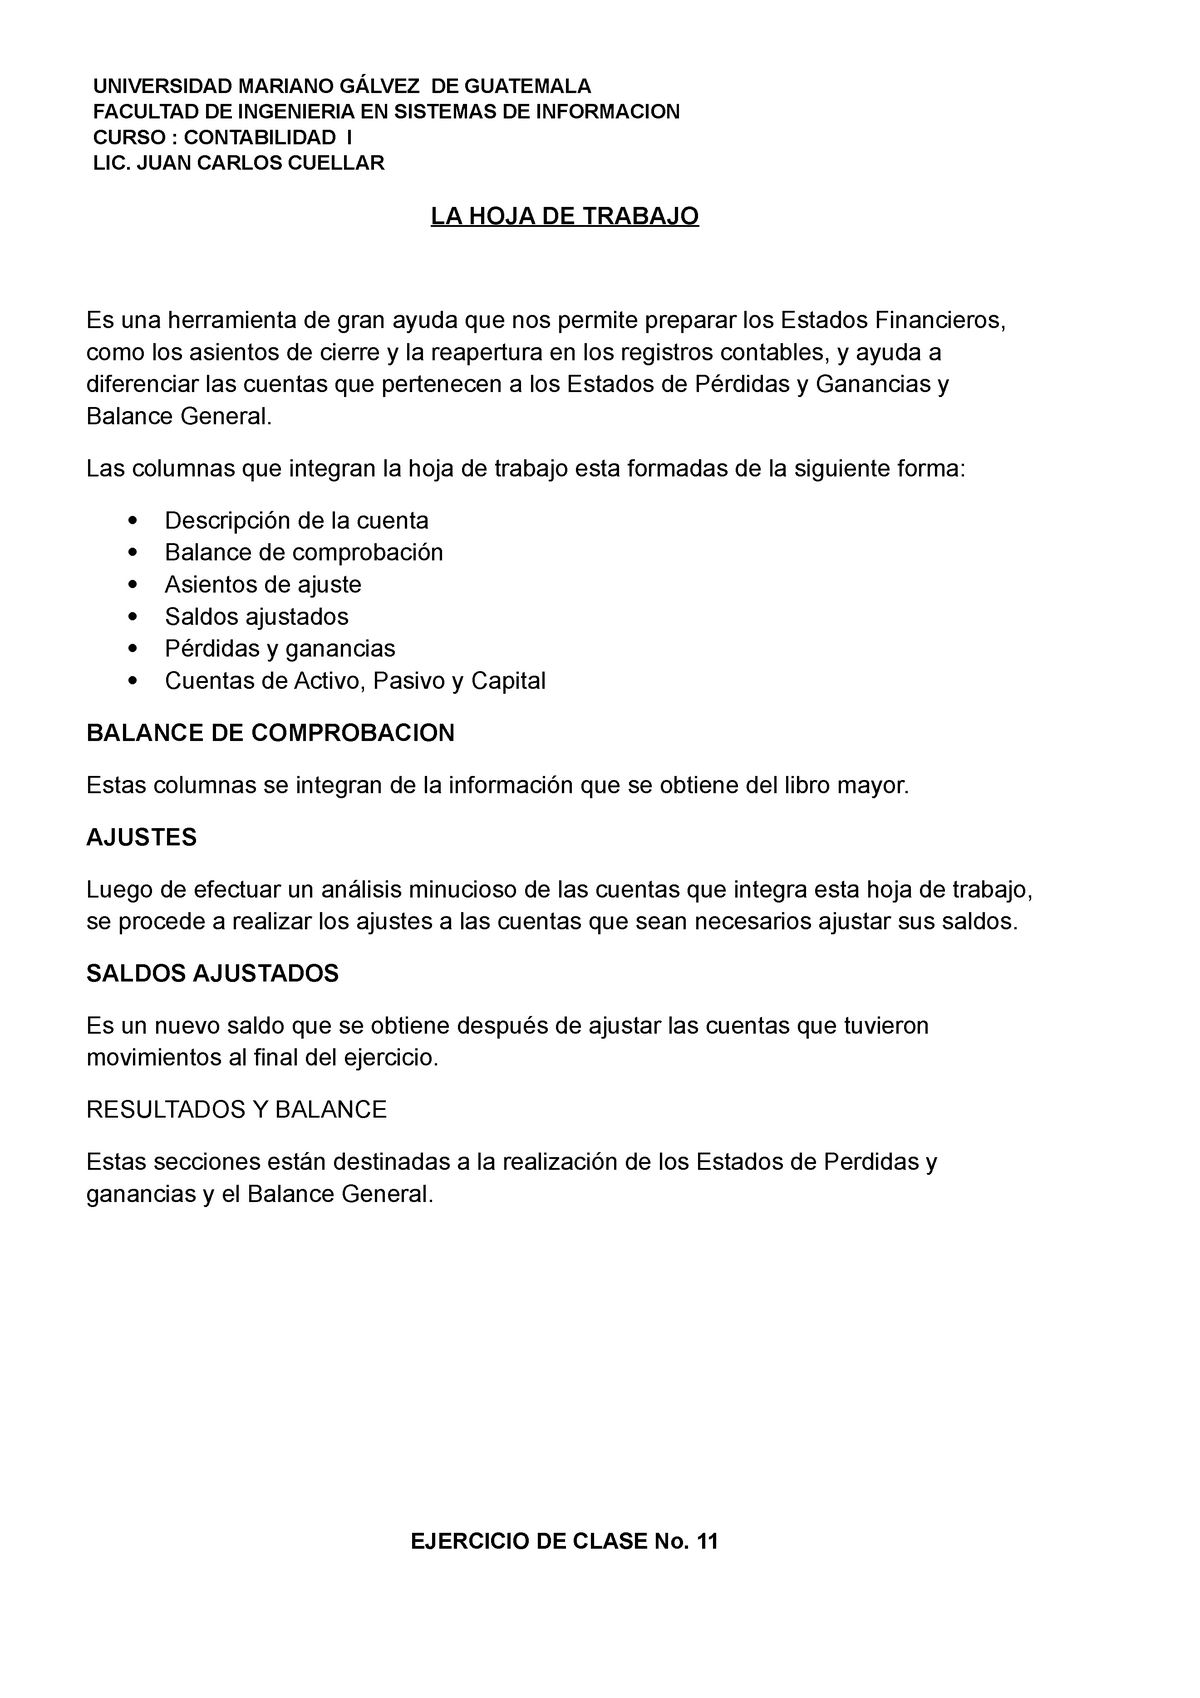 Ejercicios 11 resuelto 2020 - UNIVERSIDAD MARIANO DE GUATEMALA FACULTAD ...